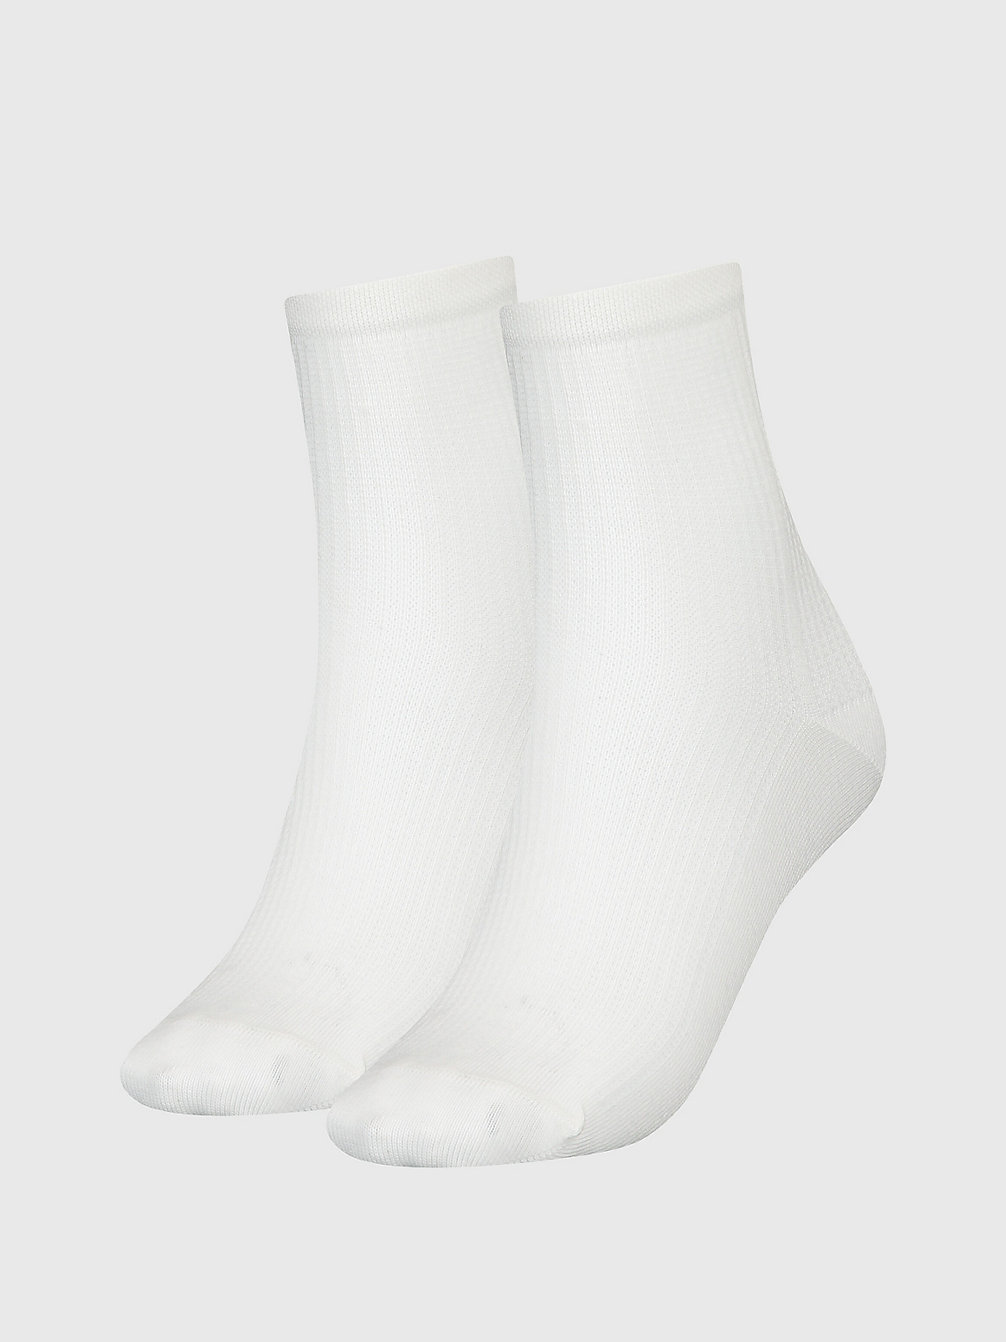 WHITE 2 Pack Ankle Socks undefined women Calvin Klein